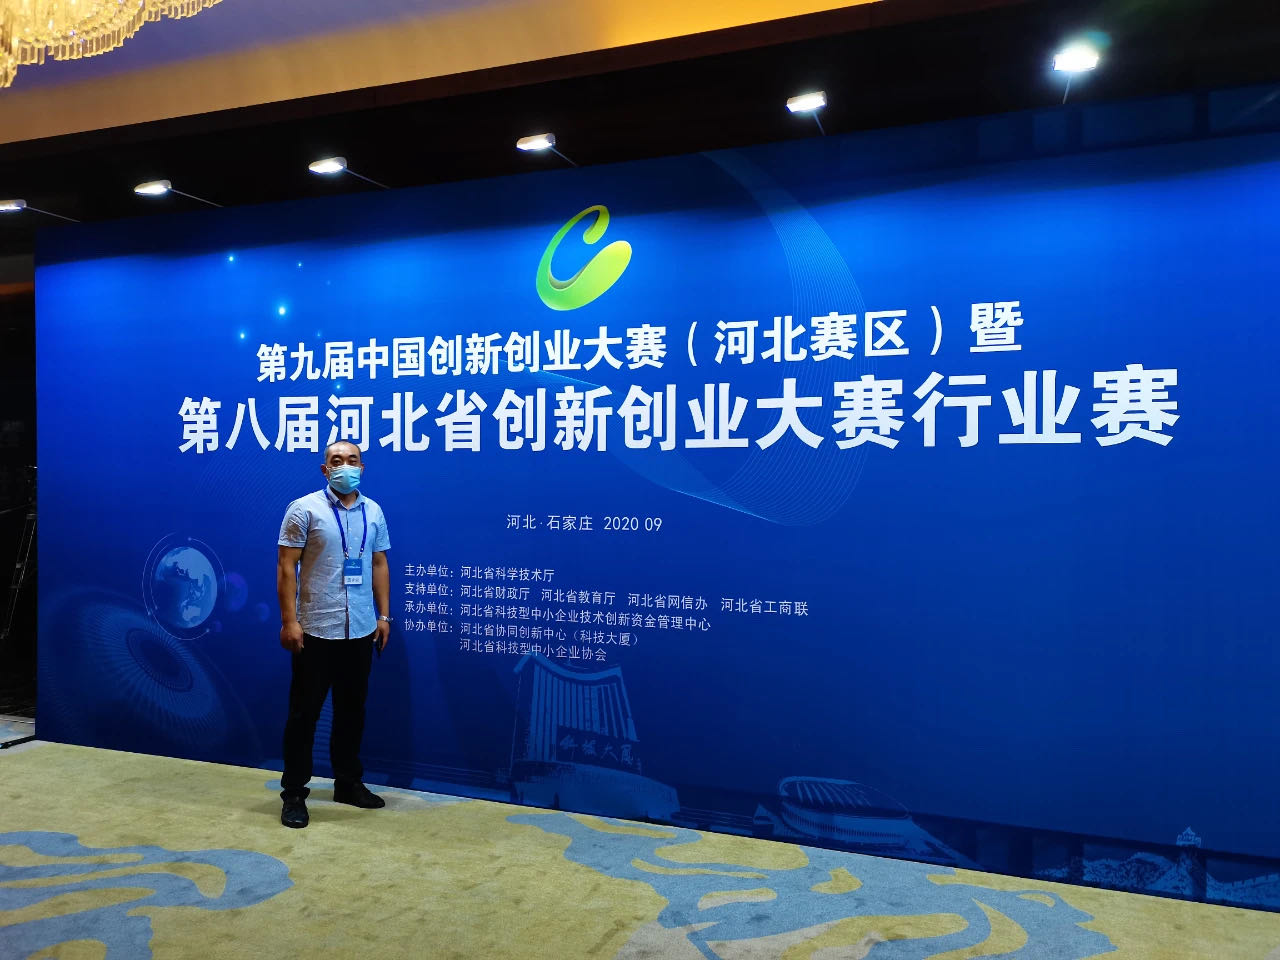 卡林STS空气源热泵项目荣获第九届中国创新创业大赛（河北赛区）暨第八届河北省创新创业大赛二等奖！